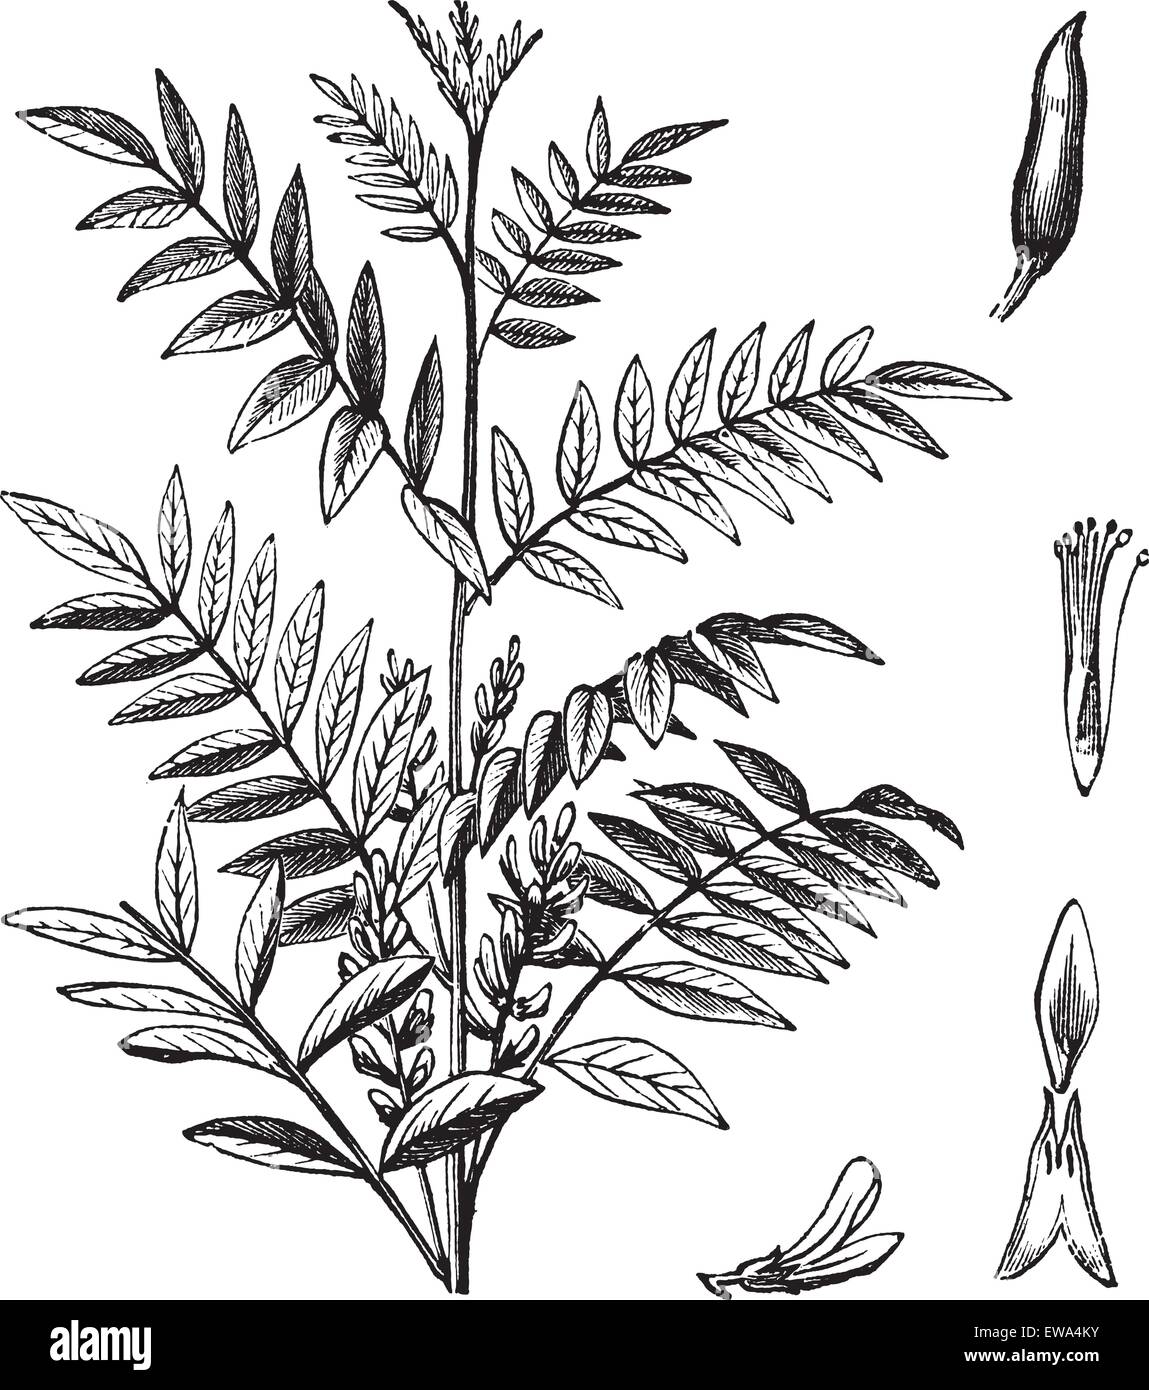 Liquorice or Glycyrrhiza glabra or Licorice or Glycyrrhiza glandulifera, vintage engraving. Old engraved illustration of Liquorice isolated on a white background. Stock Vector